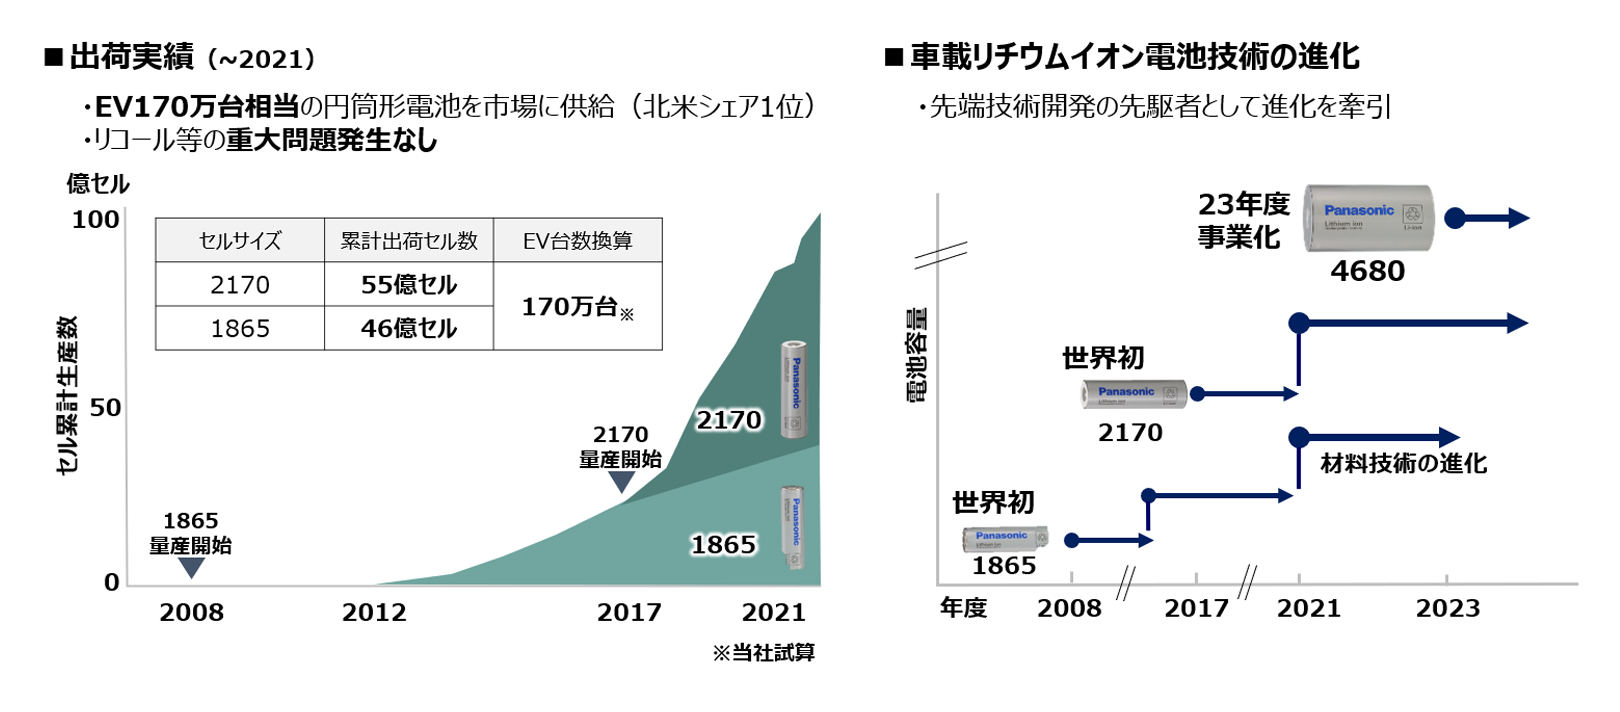 出荷実績（～2021）のグラフ、車載リチウムイオン電池技術の進化の図